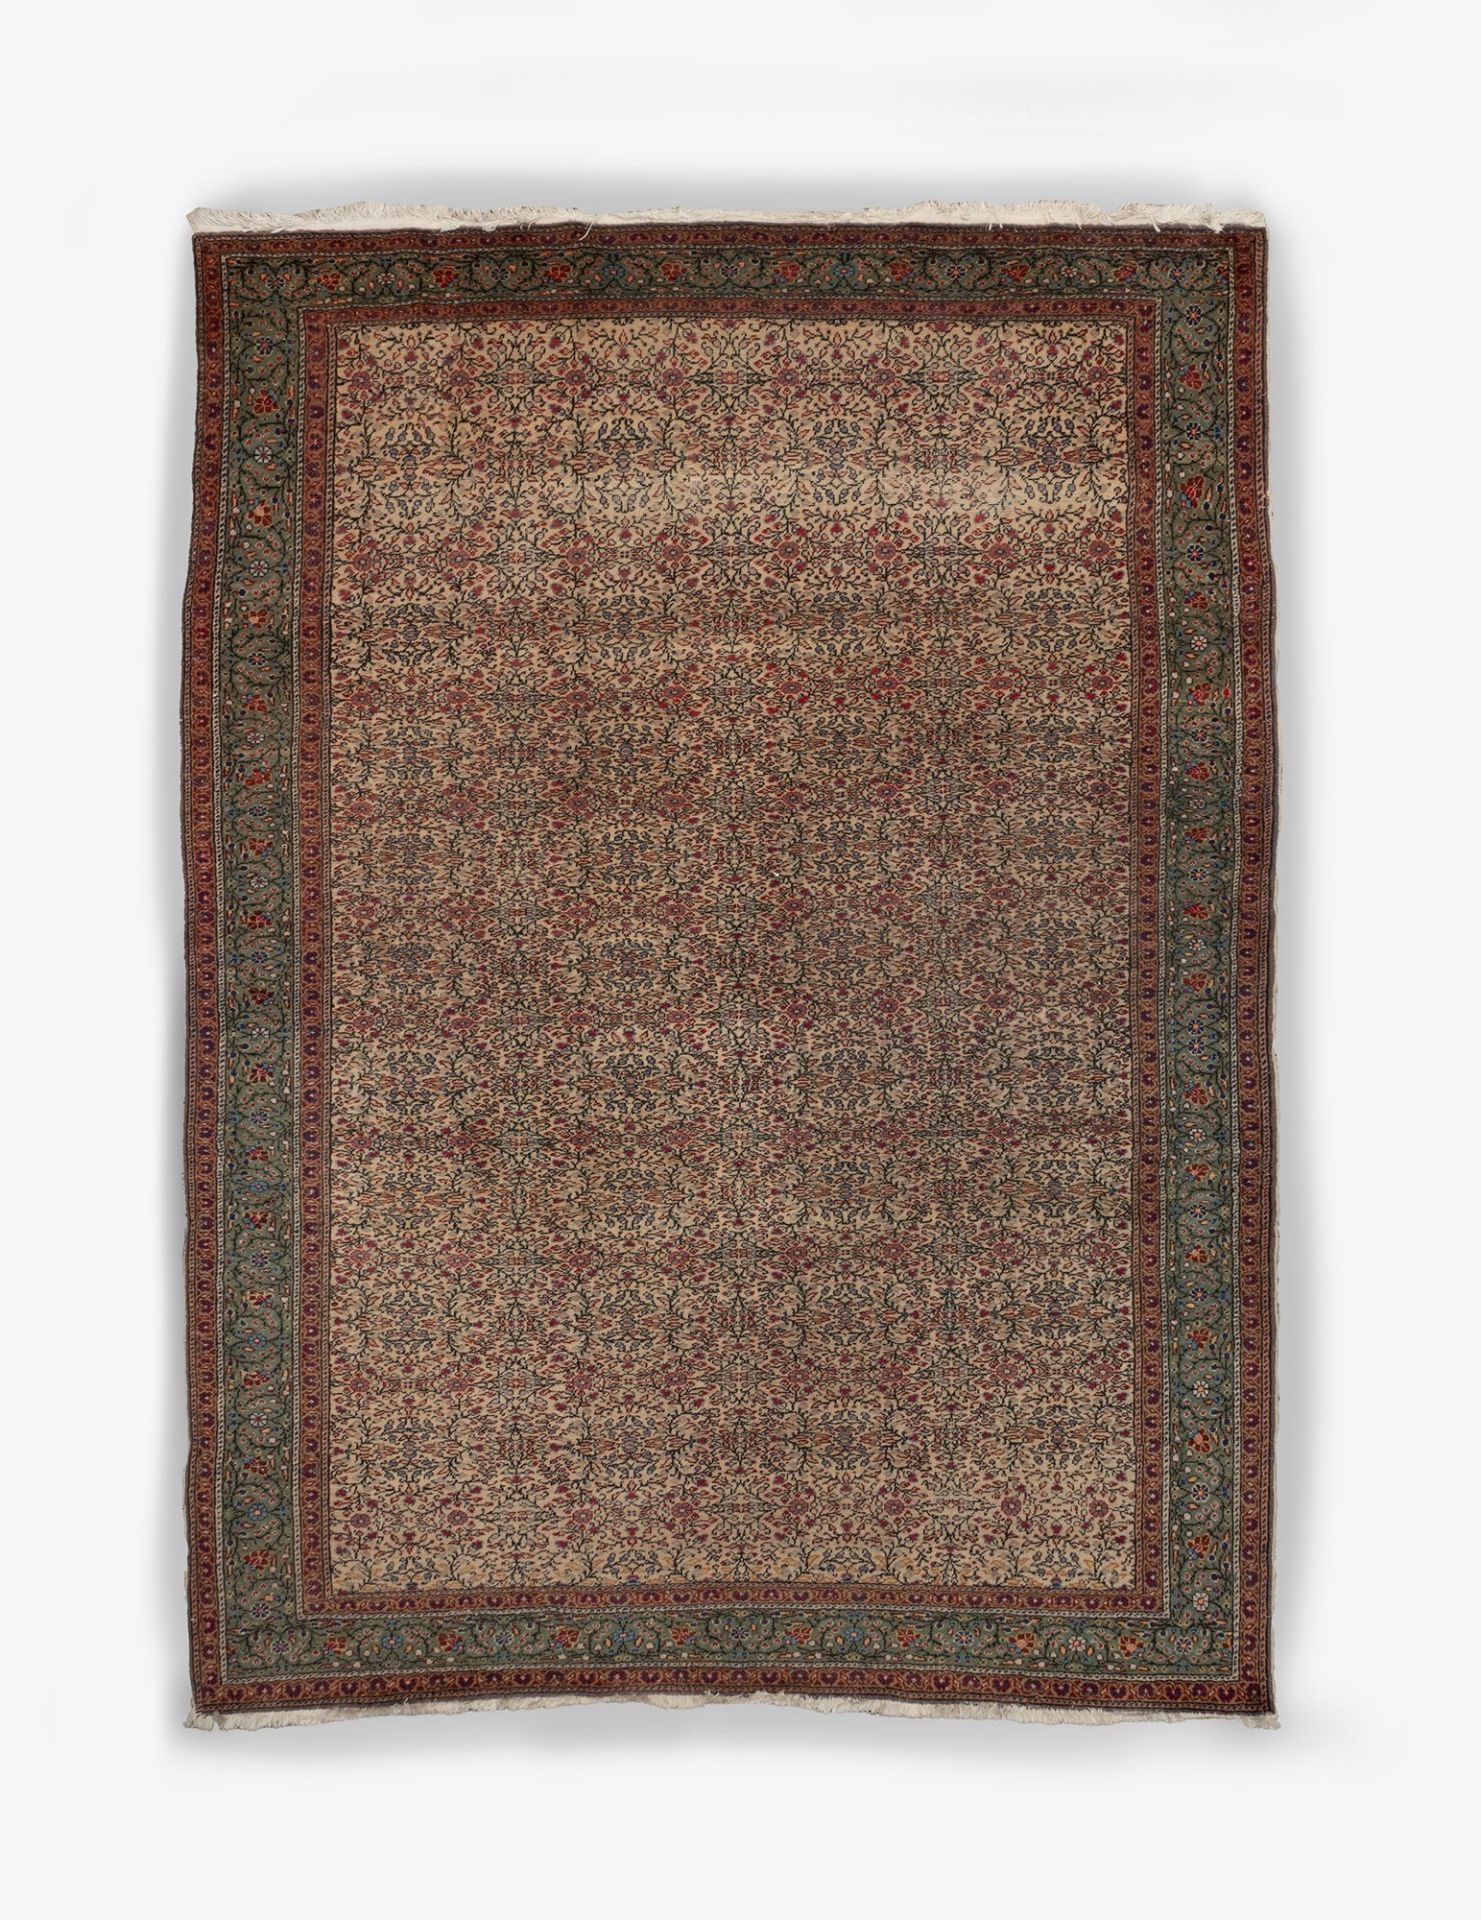 Persian carpet, 20th century